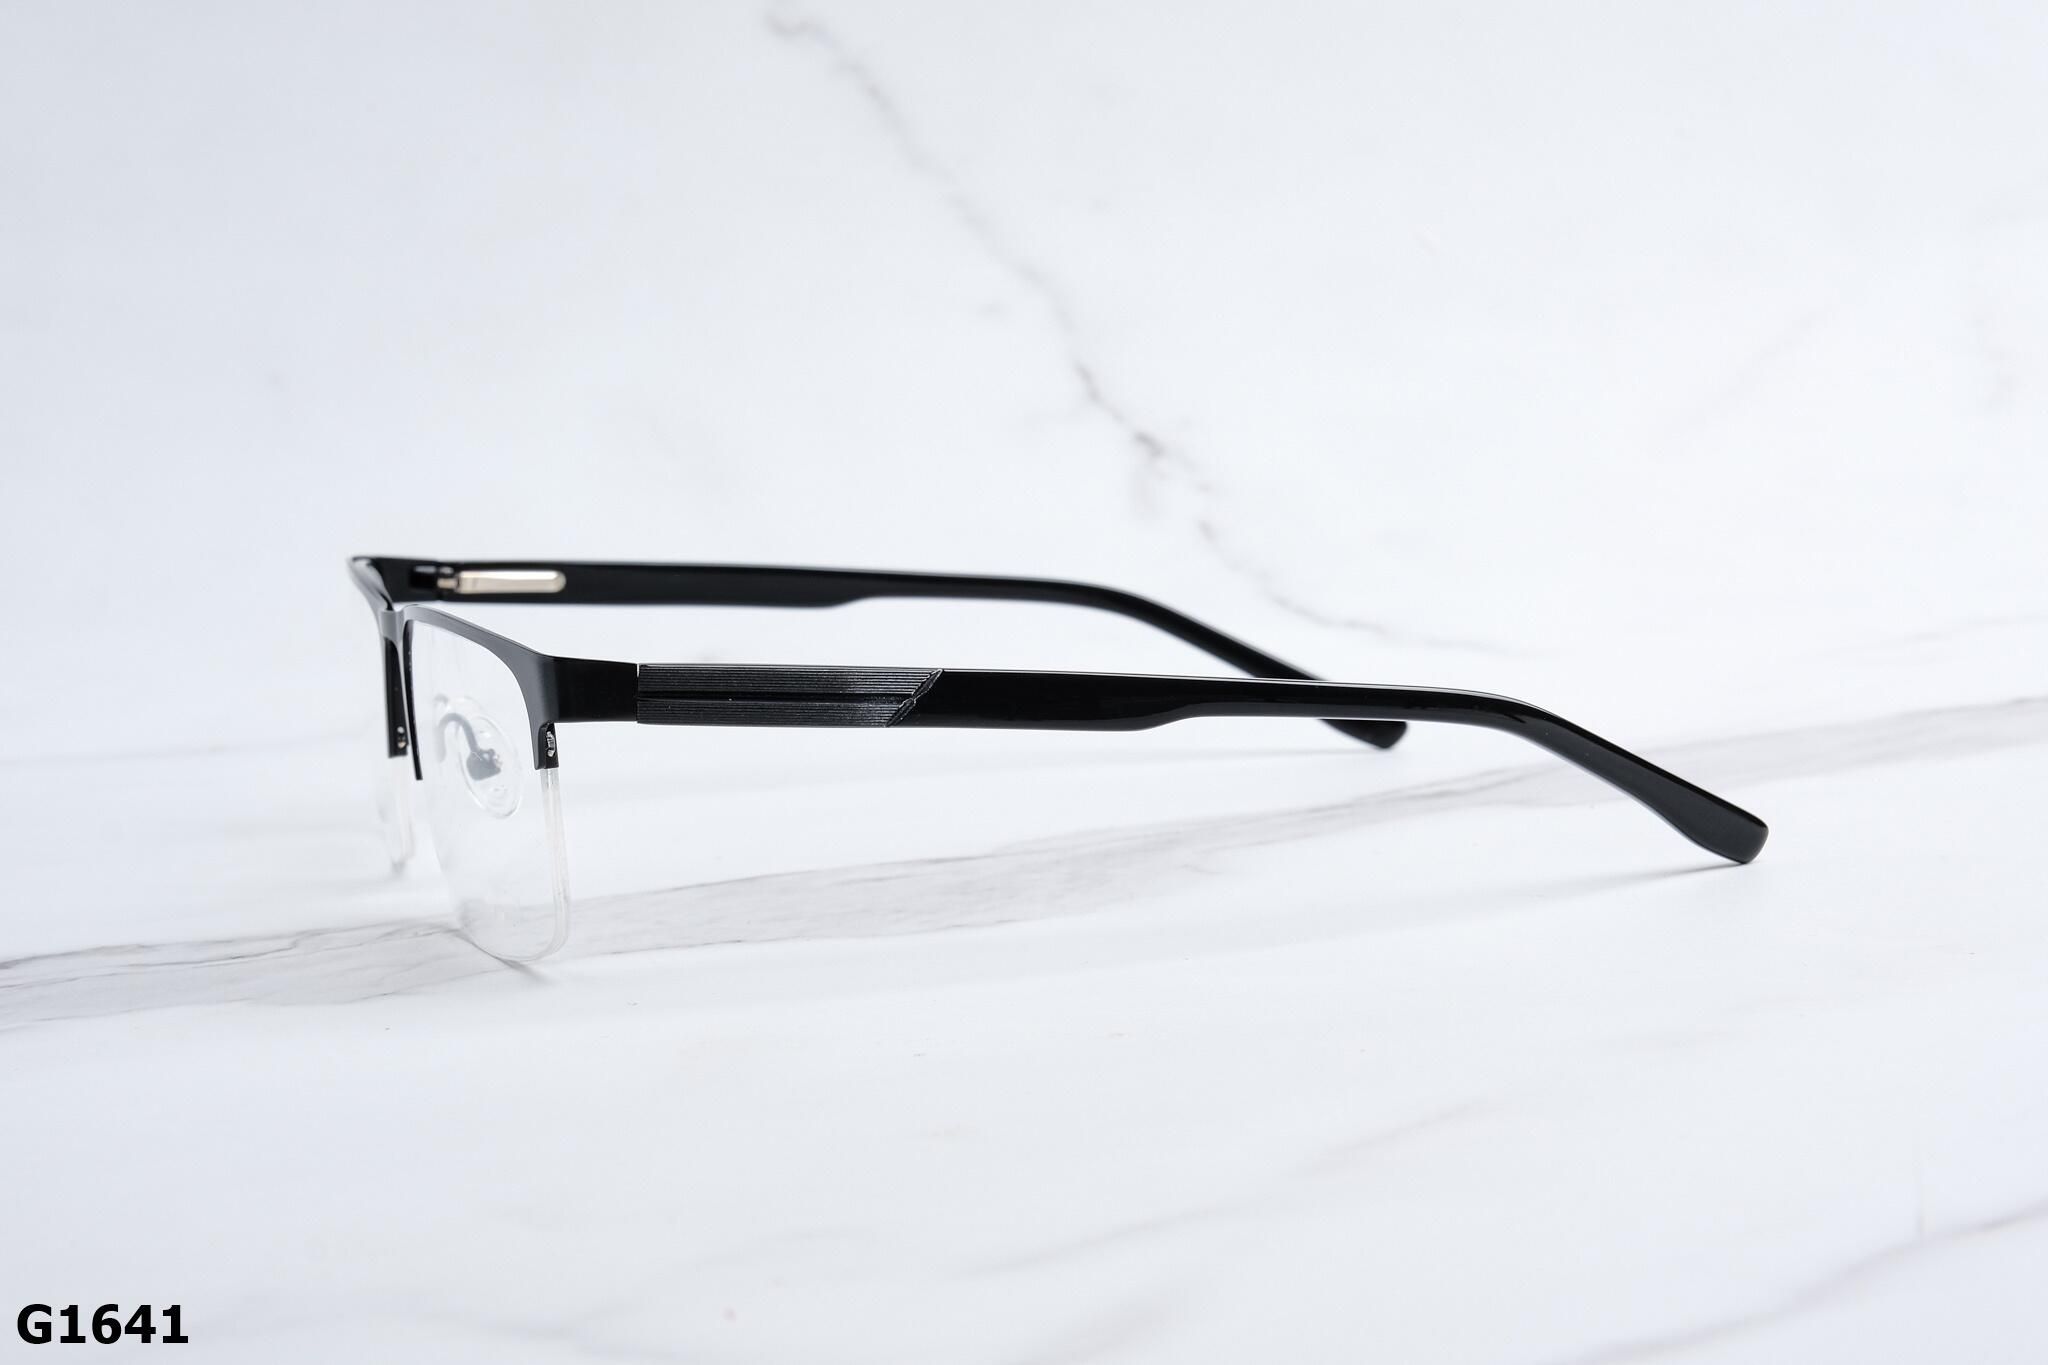  Rex-ton Eyewear - Glasses - G1641 